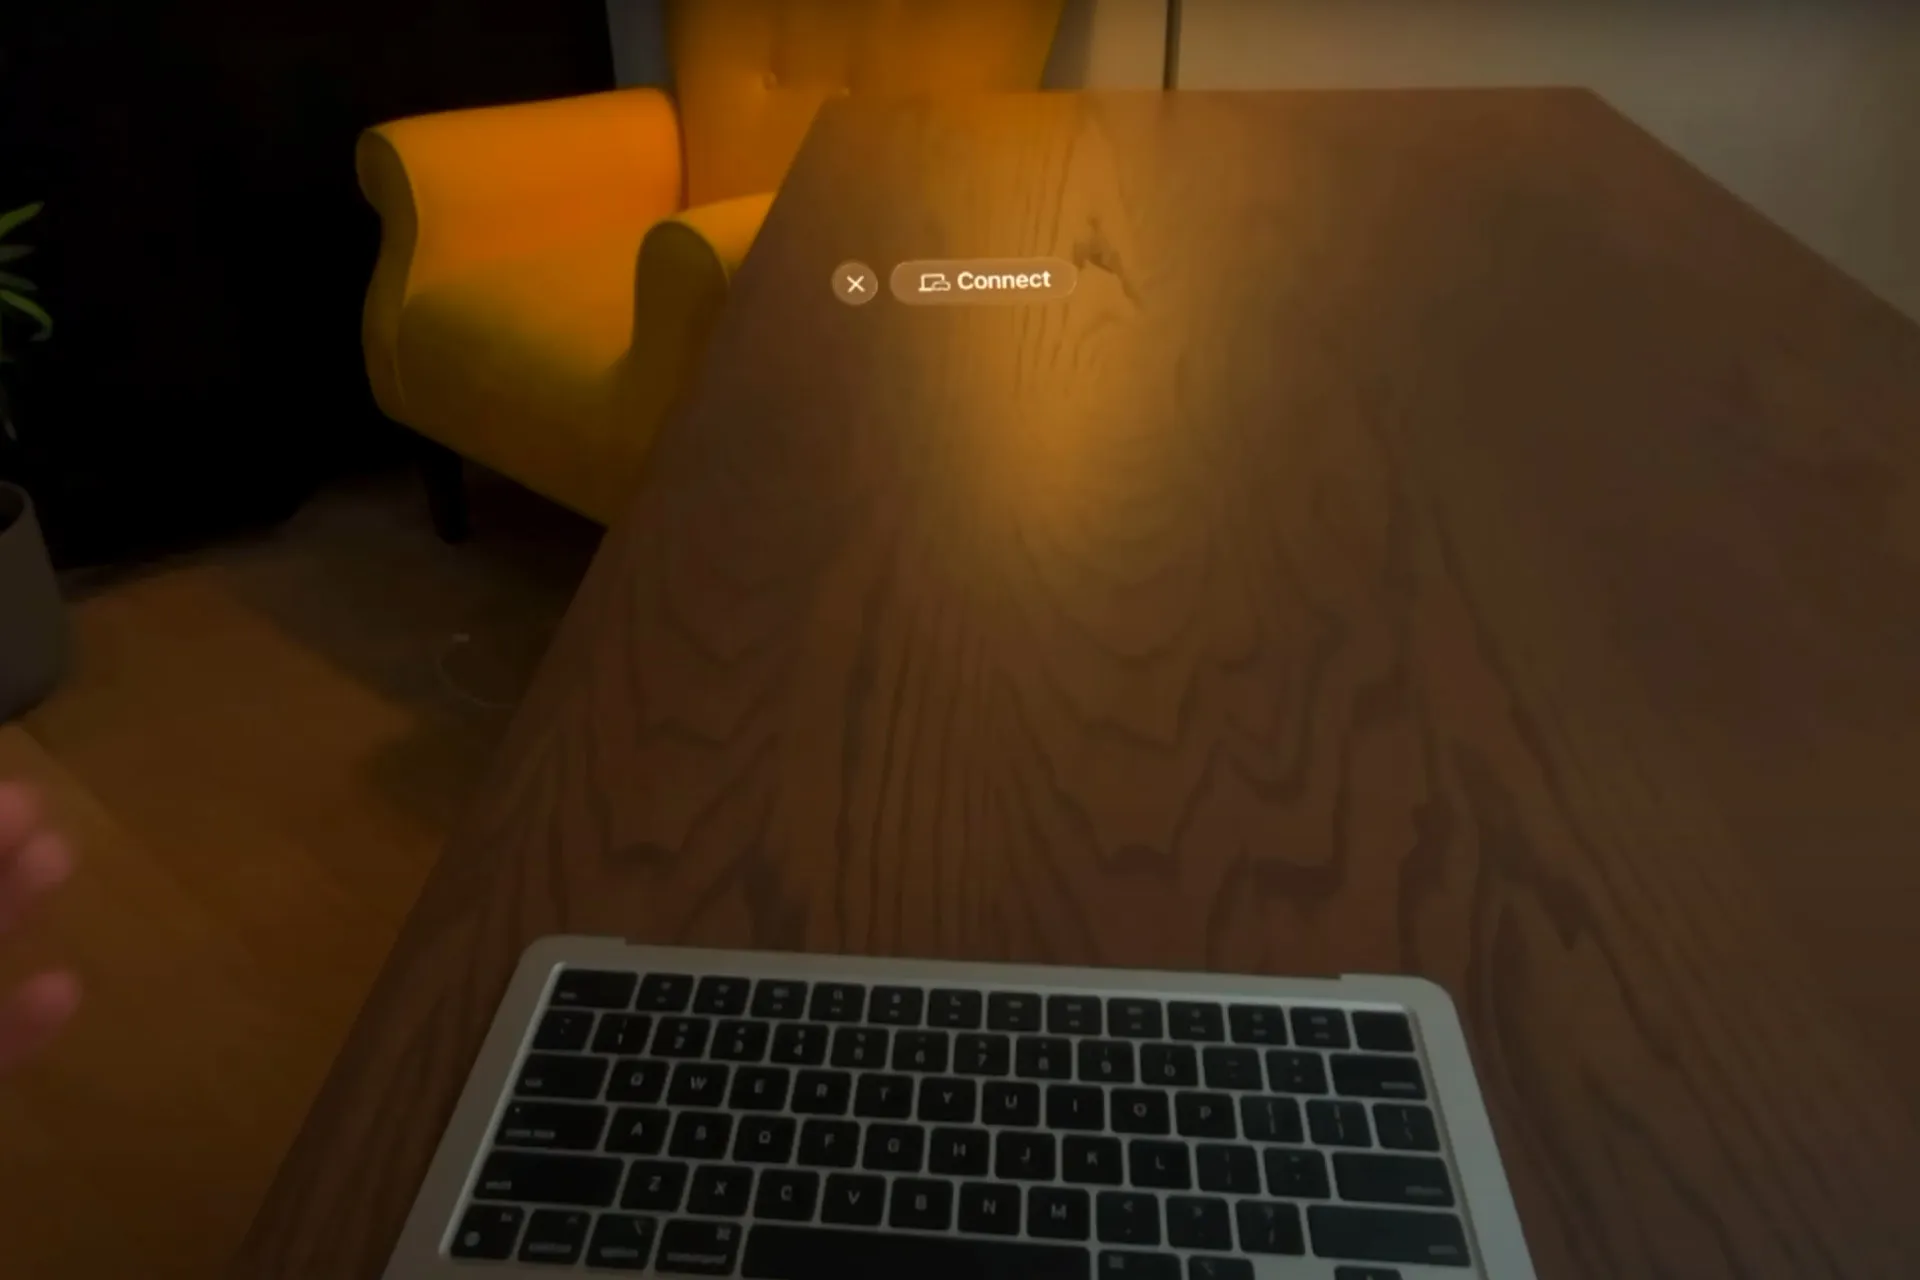 El Vision Pro detecta al MacBook y ofrece conectarse, aunque no tenga pantalla.